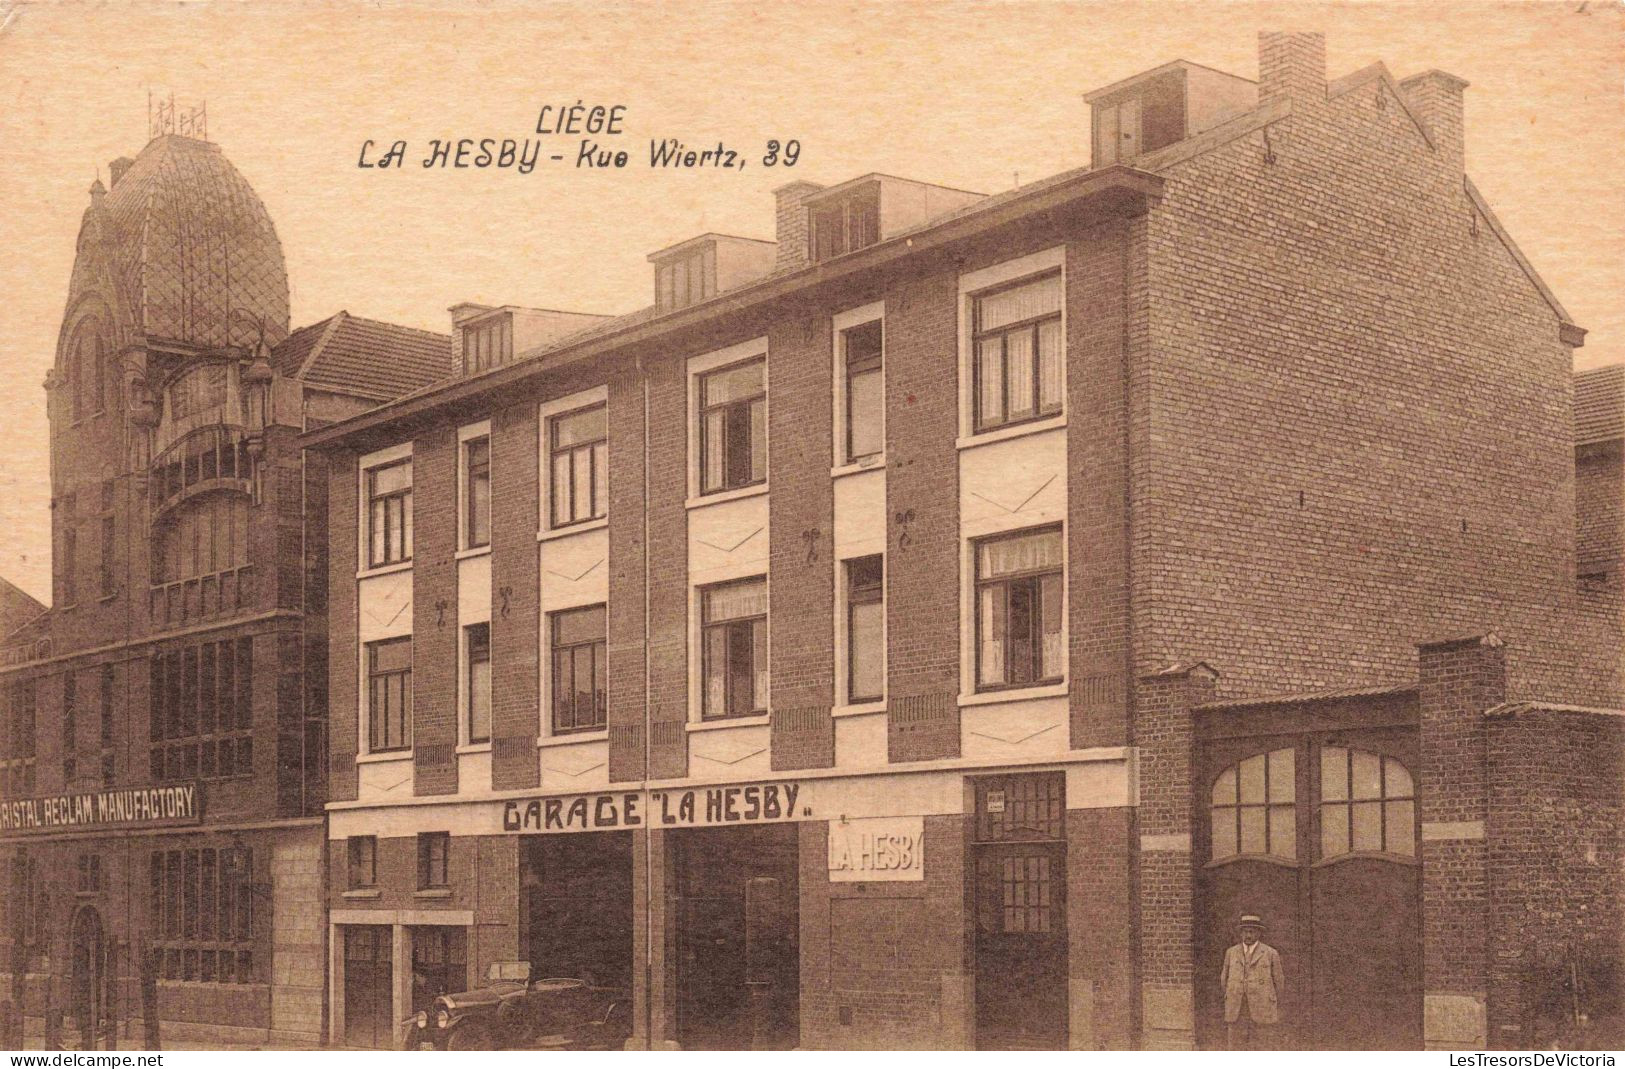 BELGIQUE - Liège - La Hesby - Kue Wiertz, 39 - Garage - Carte Postale Ancienne - Liege